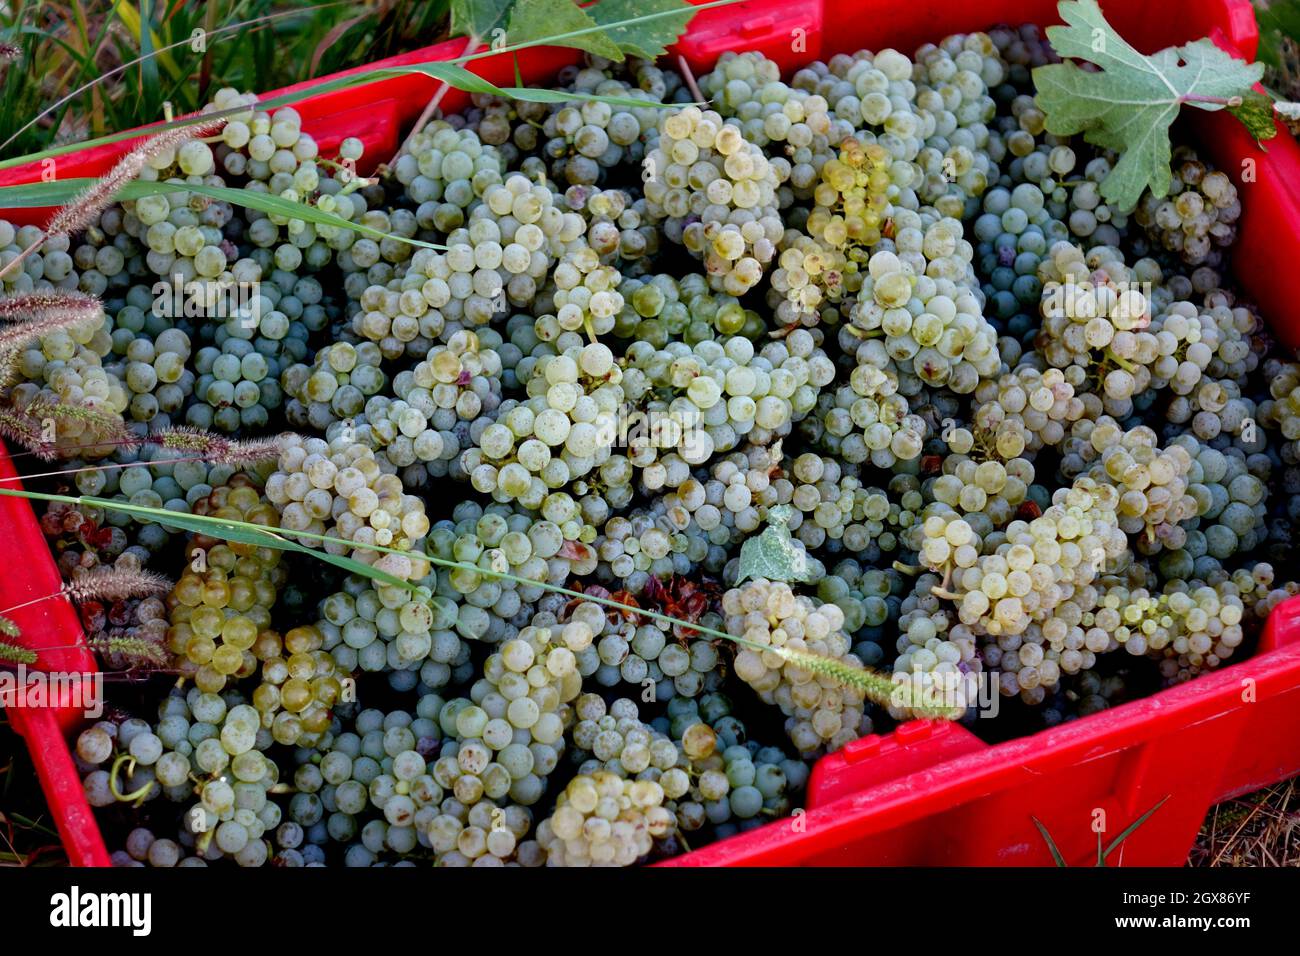 Le uve Sauvignon blanc sono state coltivate con successo nelle regioni del wne in tutto il mondo. La regione vinicola del lago Chelan è ben nota per il lungo mare in crescita Foto Stock